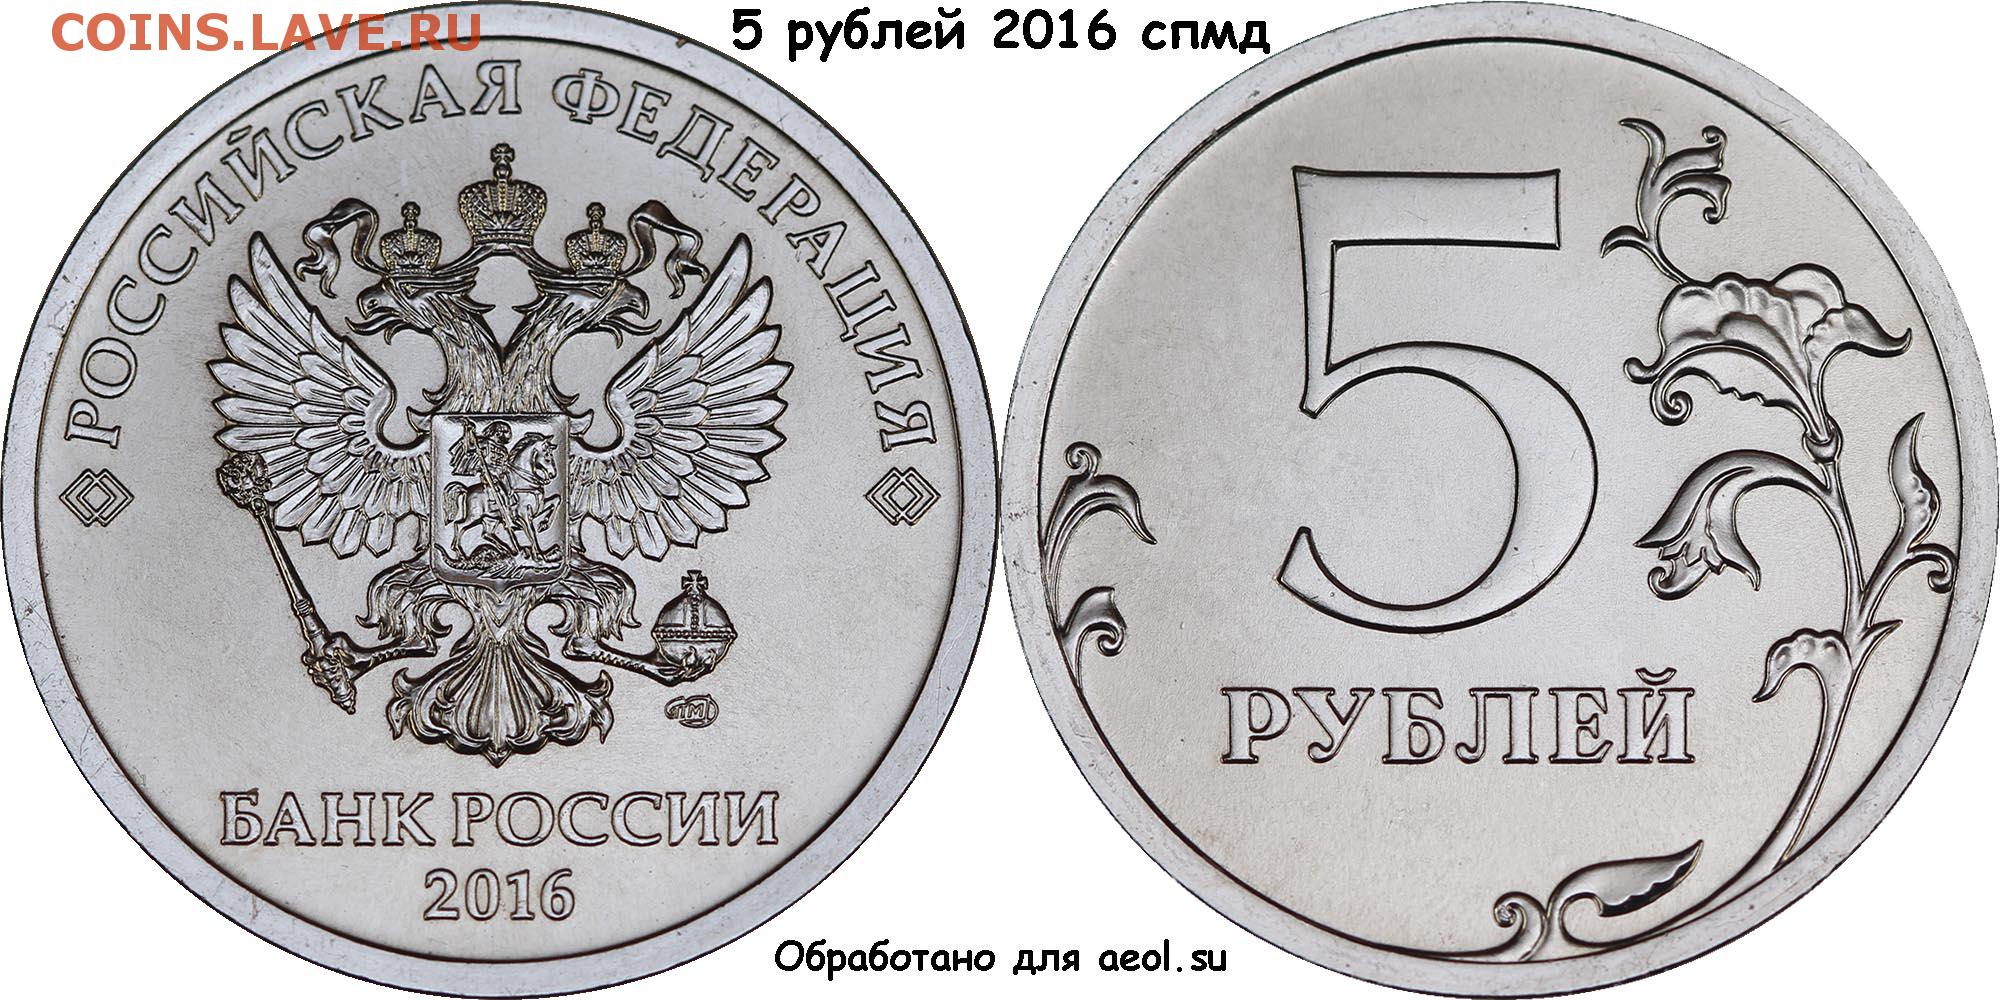 Ба рубль. 1 Рубль 2020 Россия ММД. Монета 2 рубля 2016 года СПМД. 5 Рублей 2016 года СПМД. Монета 1 рубль реверс и Аверс.